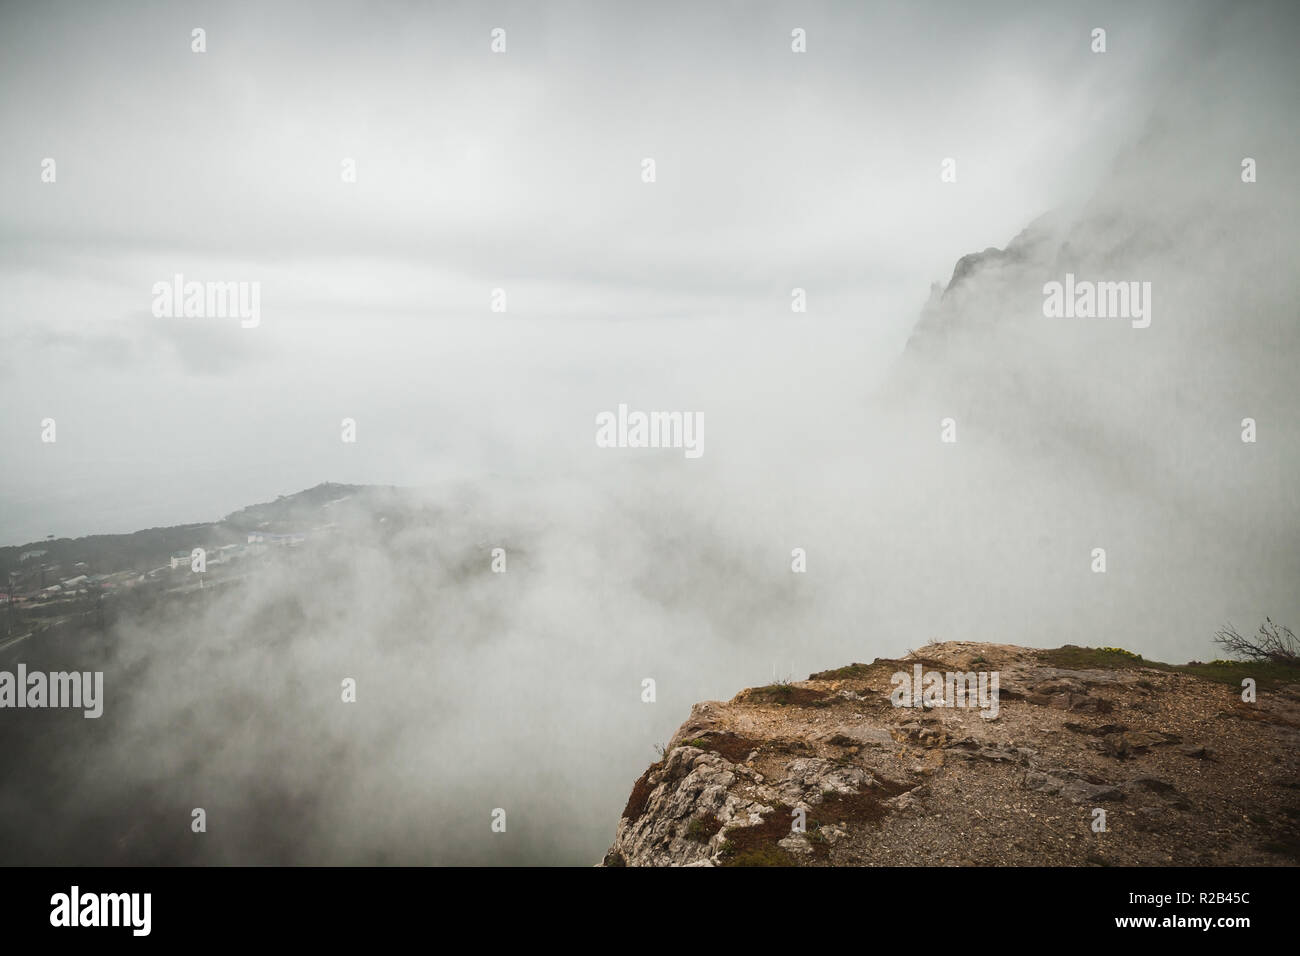 La nebbia paesaggio di montagna, bordo roccioso. Foros nella mattina di primavera. Crimea, il litorale del Mar Nero. Vintage la correzione delle tonalità effetto di filtro Foto Stock